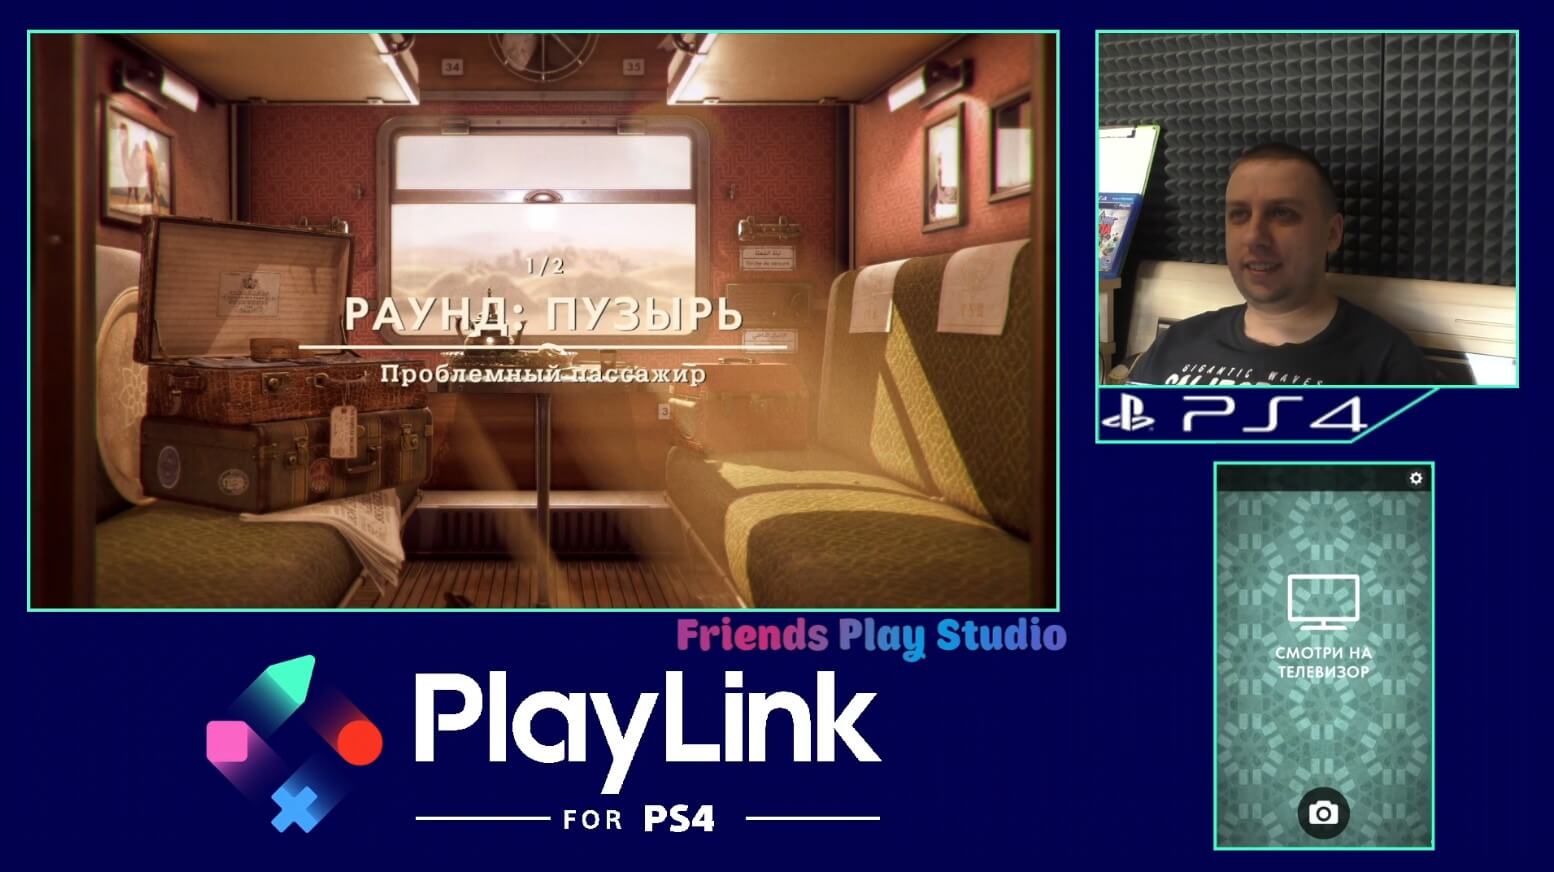 That’s You - геймплей игры на PlayStation 4